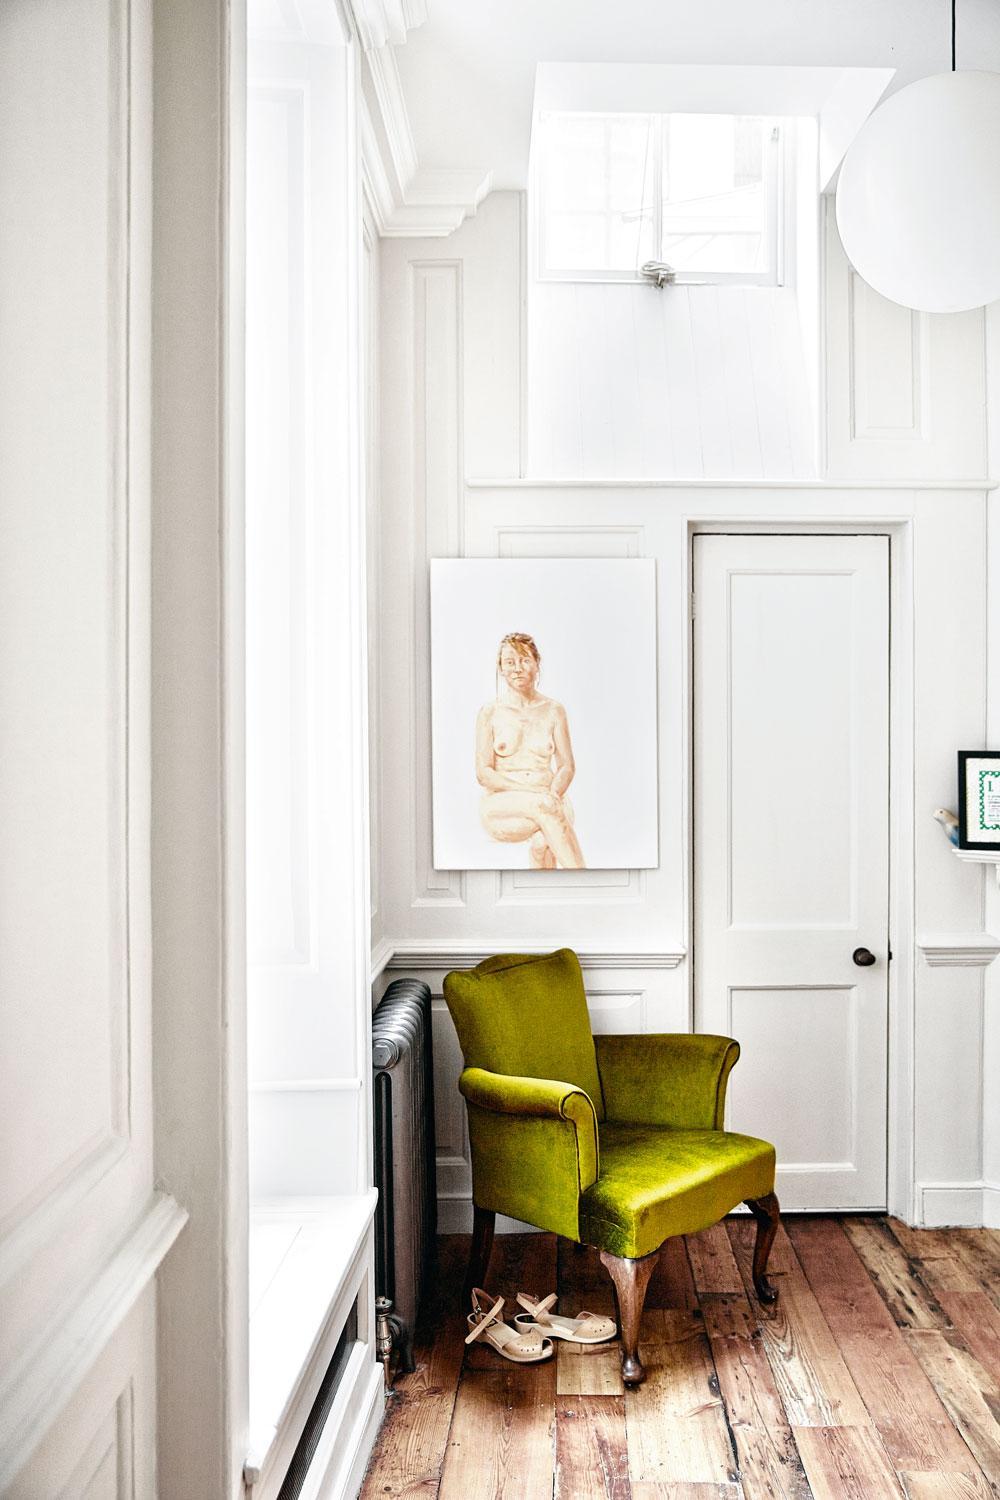 Dans cette petite pièce calme qui jouxte la cuisine, un fauteuil vert chiné et une oeuvre d'Andrew Whamond.